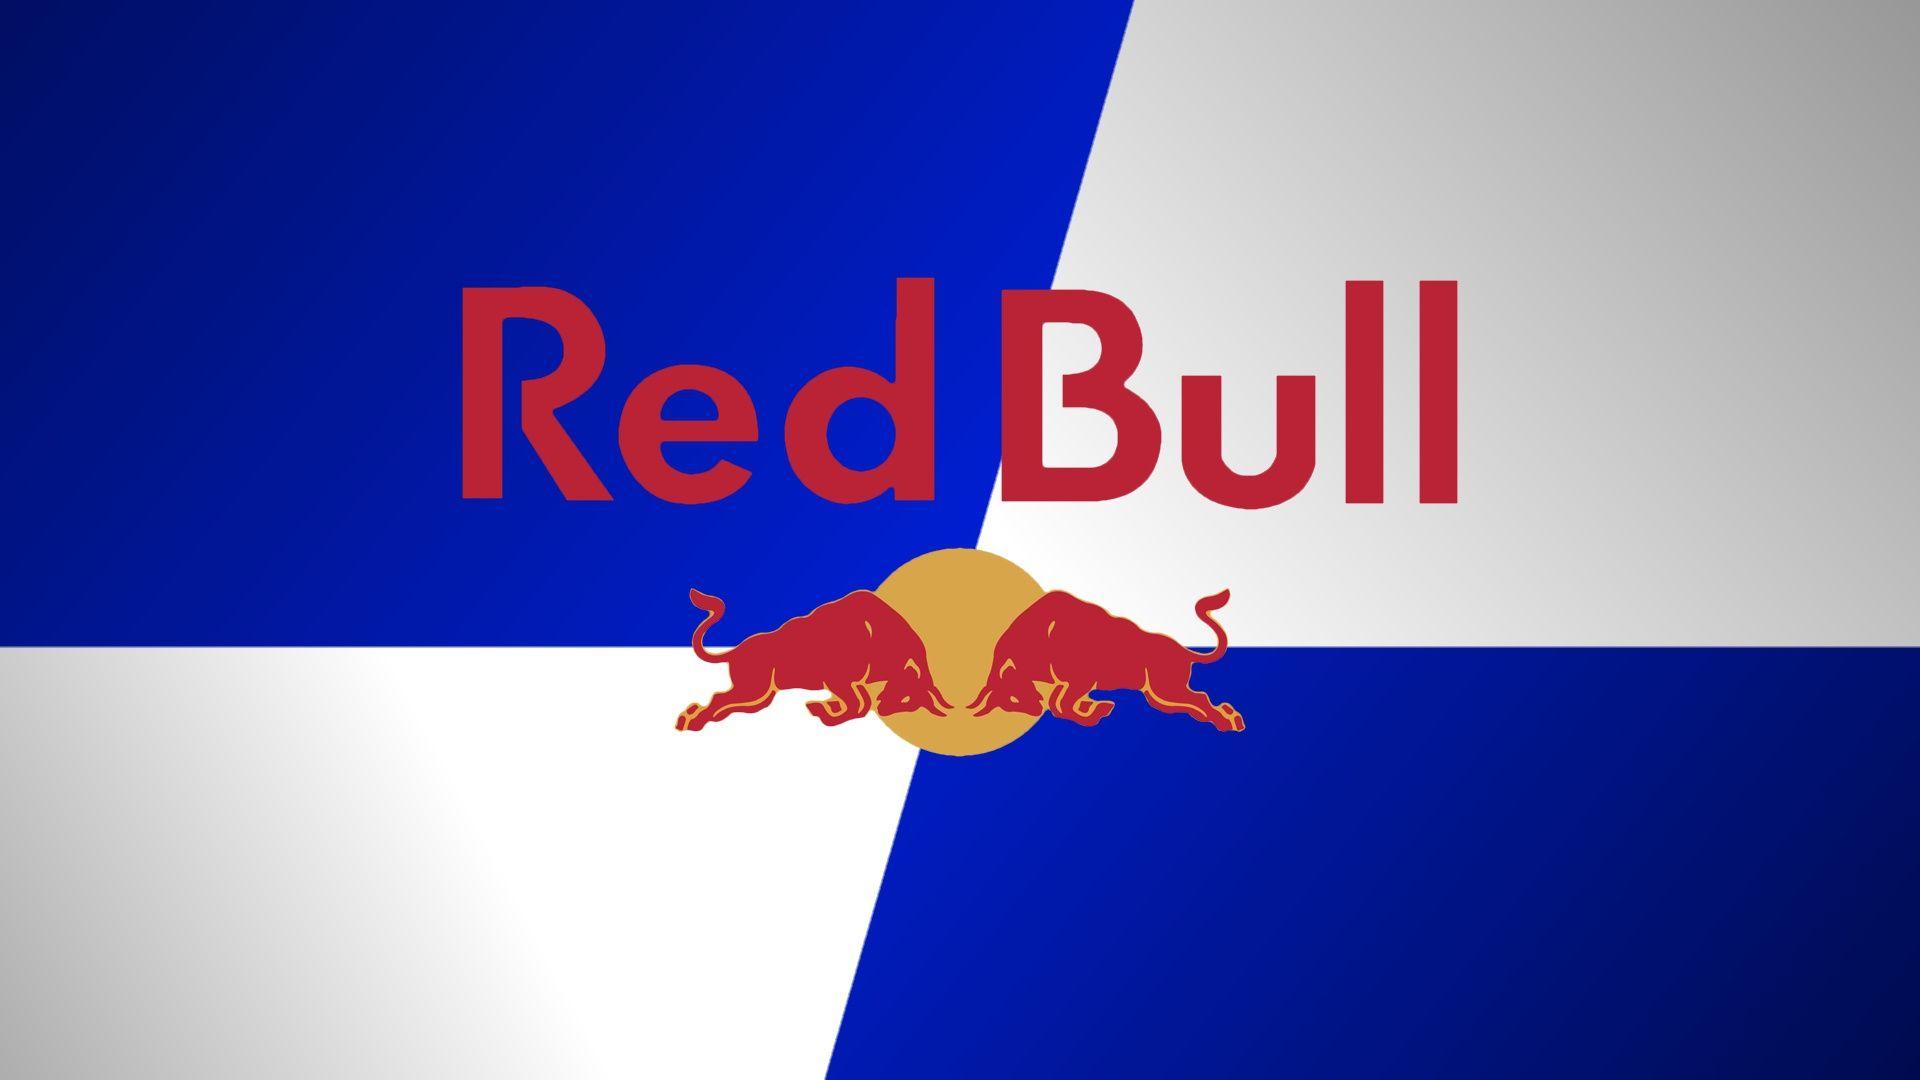 Logo Red Bull không chỉ là biểu tượng của một thương hiệu nổi tiếng mà còn mang ý nghĩa về sự năng động và đầy sức sống. Tải ngay những hình nền Red Bull Logo chất lượng cao để làm nền cho máy tính của bạn.